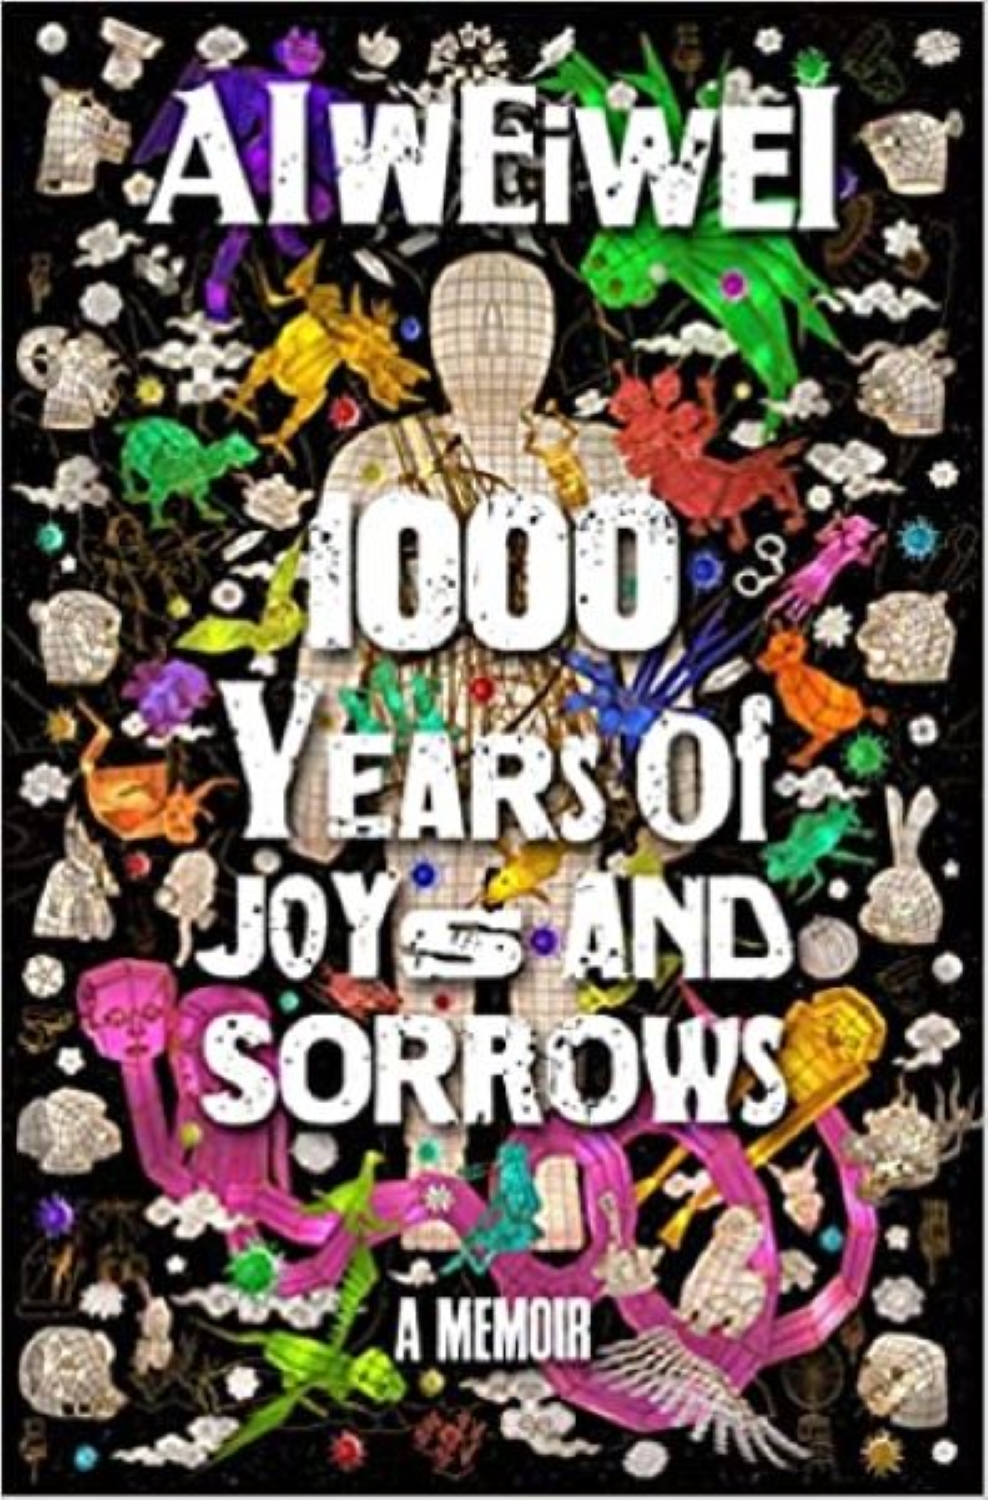 1000 Years of Joy and Sorrow by Al Wei Wei